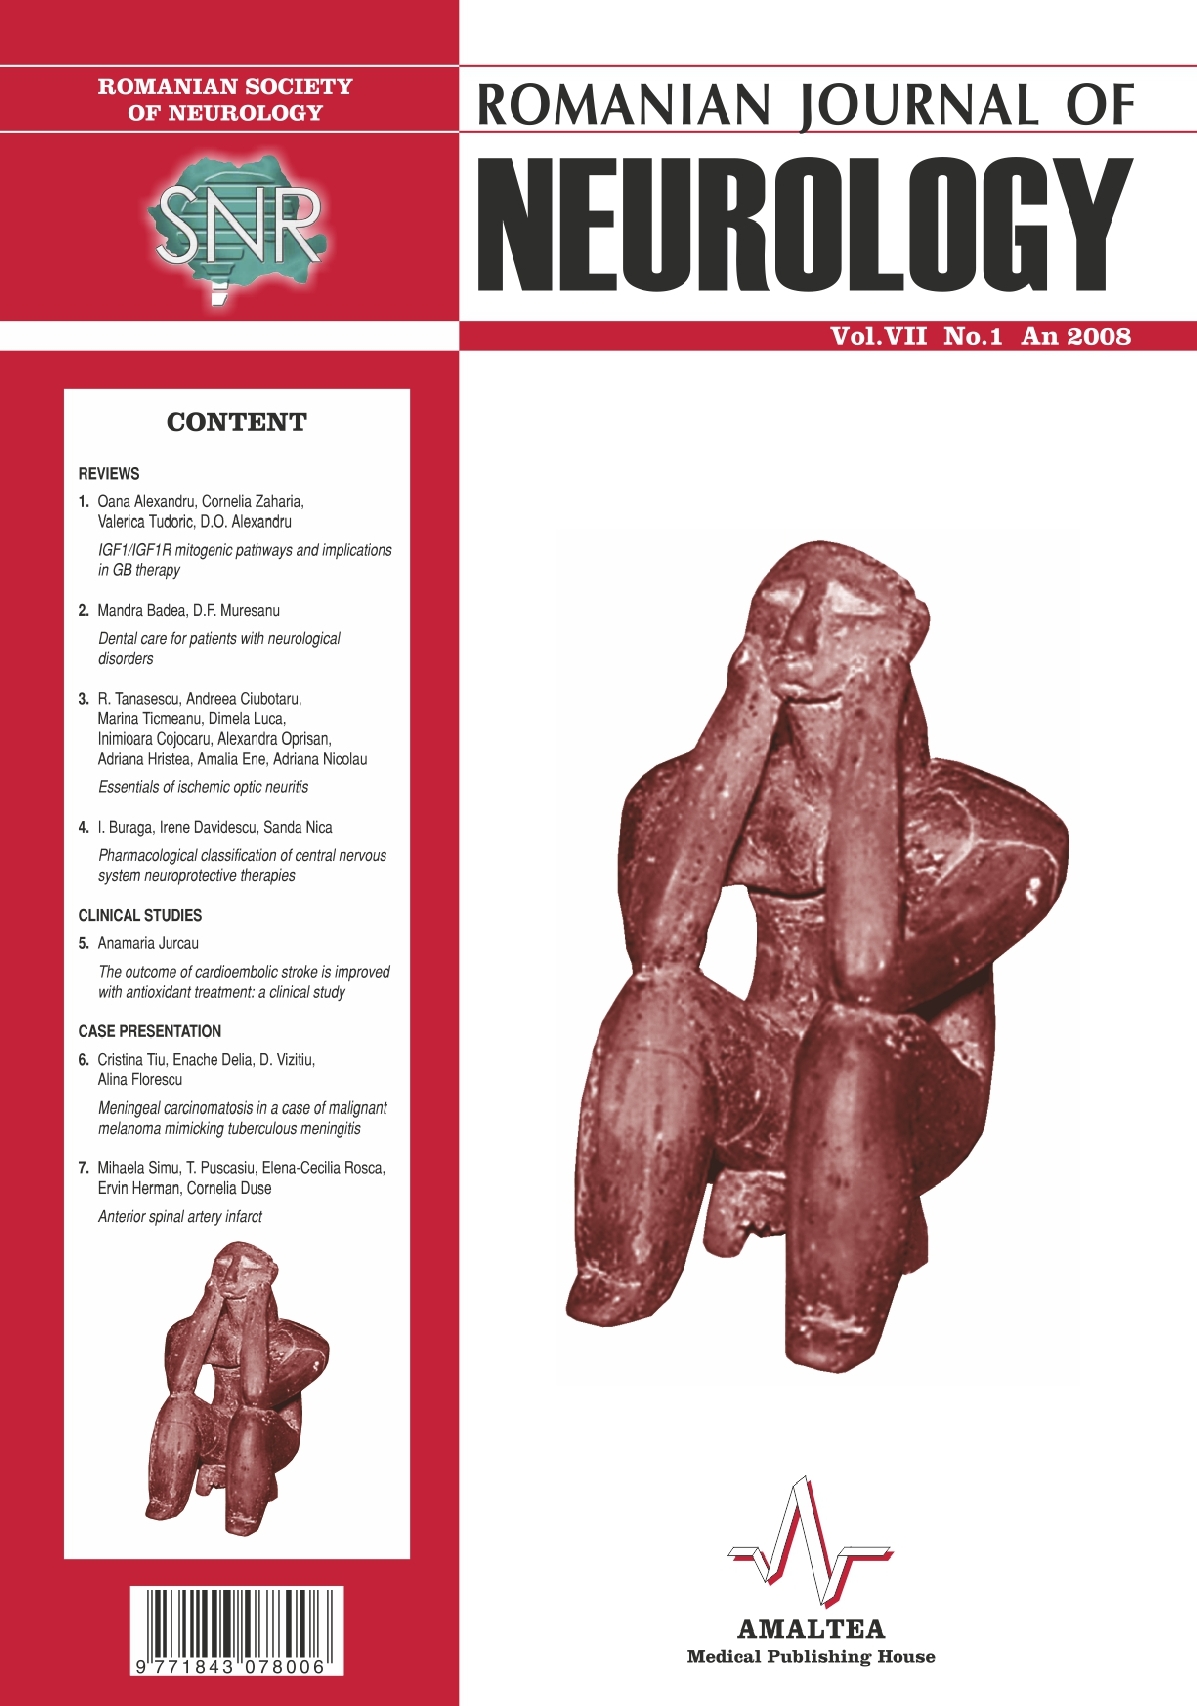 Romanian Journal of Neurology, Volume VII, No. 1, 2008